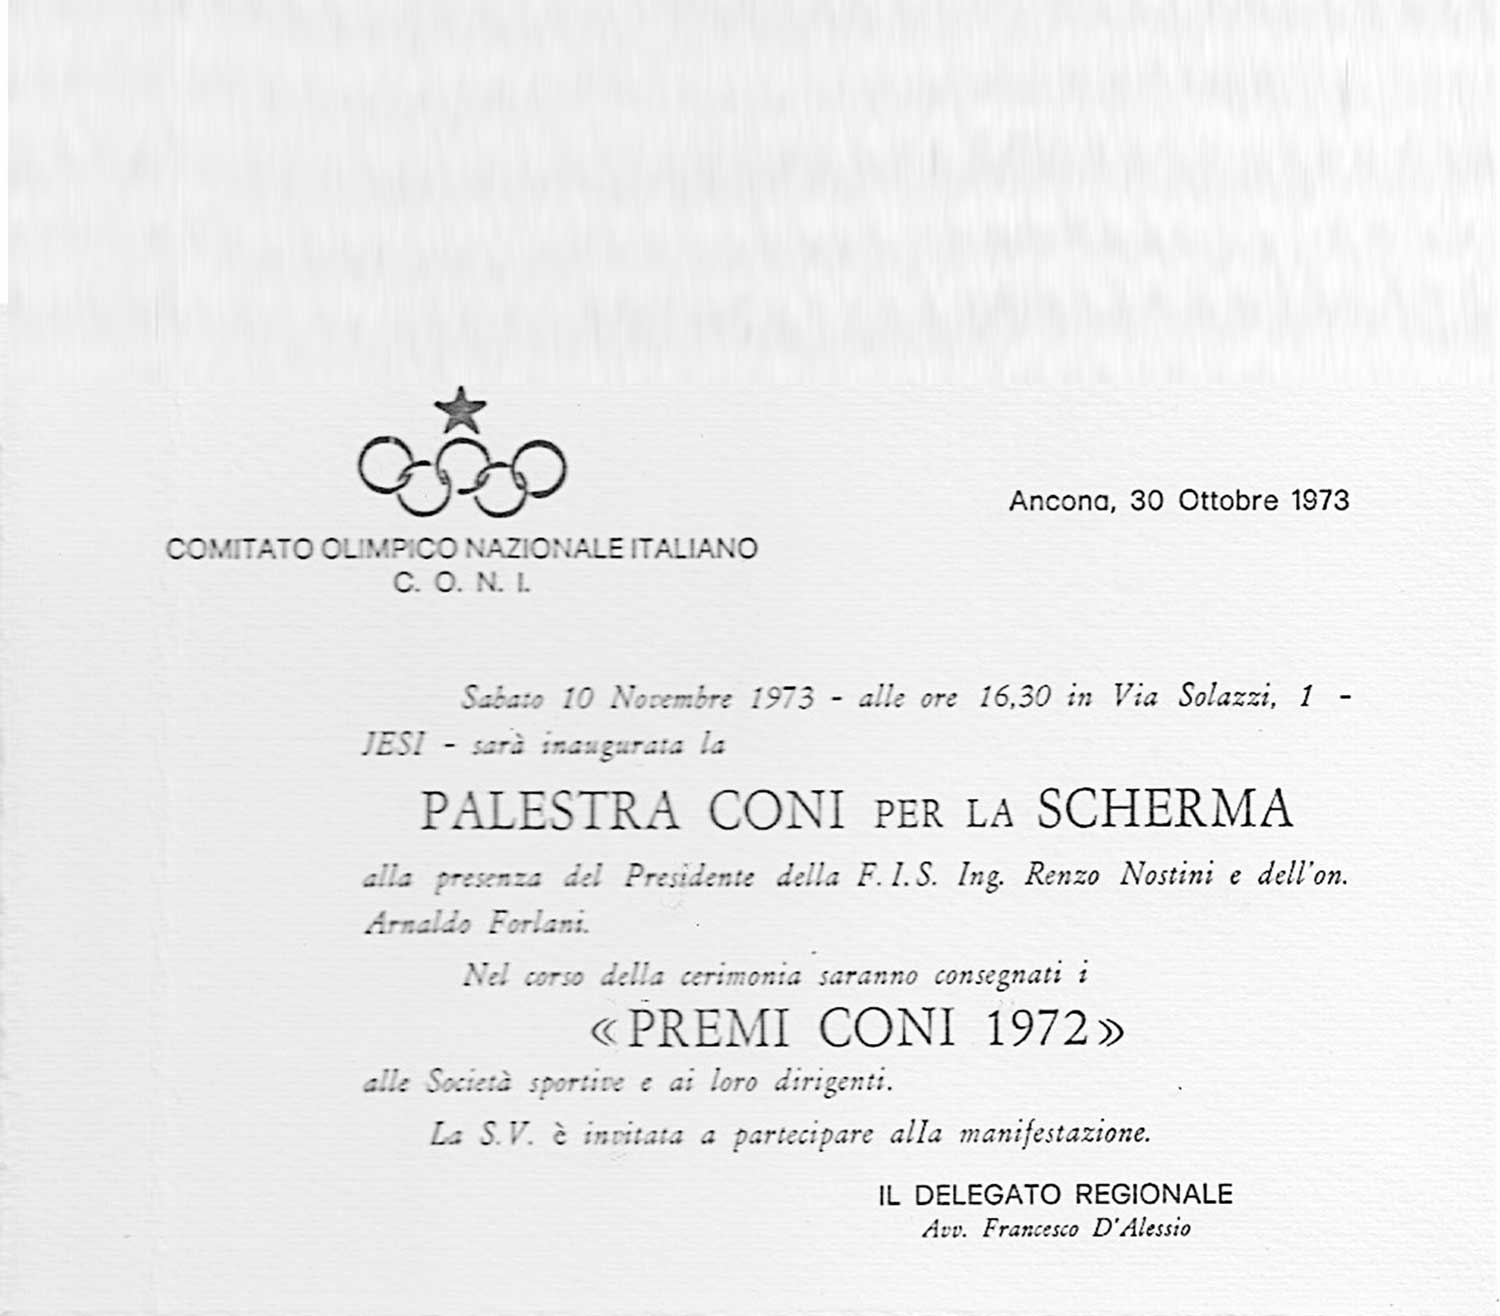 5 - Palestra di scherma per il CONI a Jesi (AN) - Premio CONI 1972